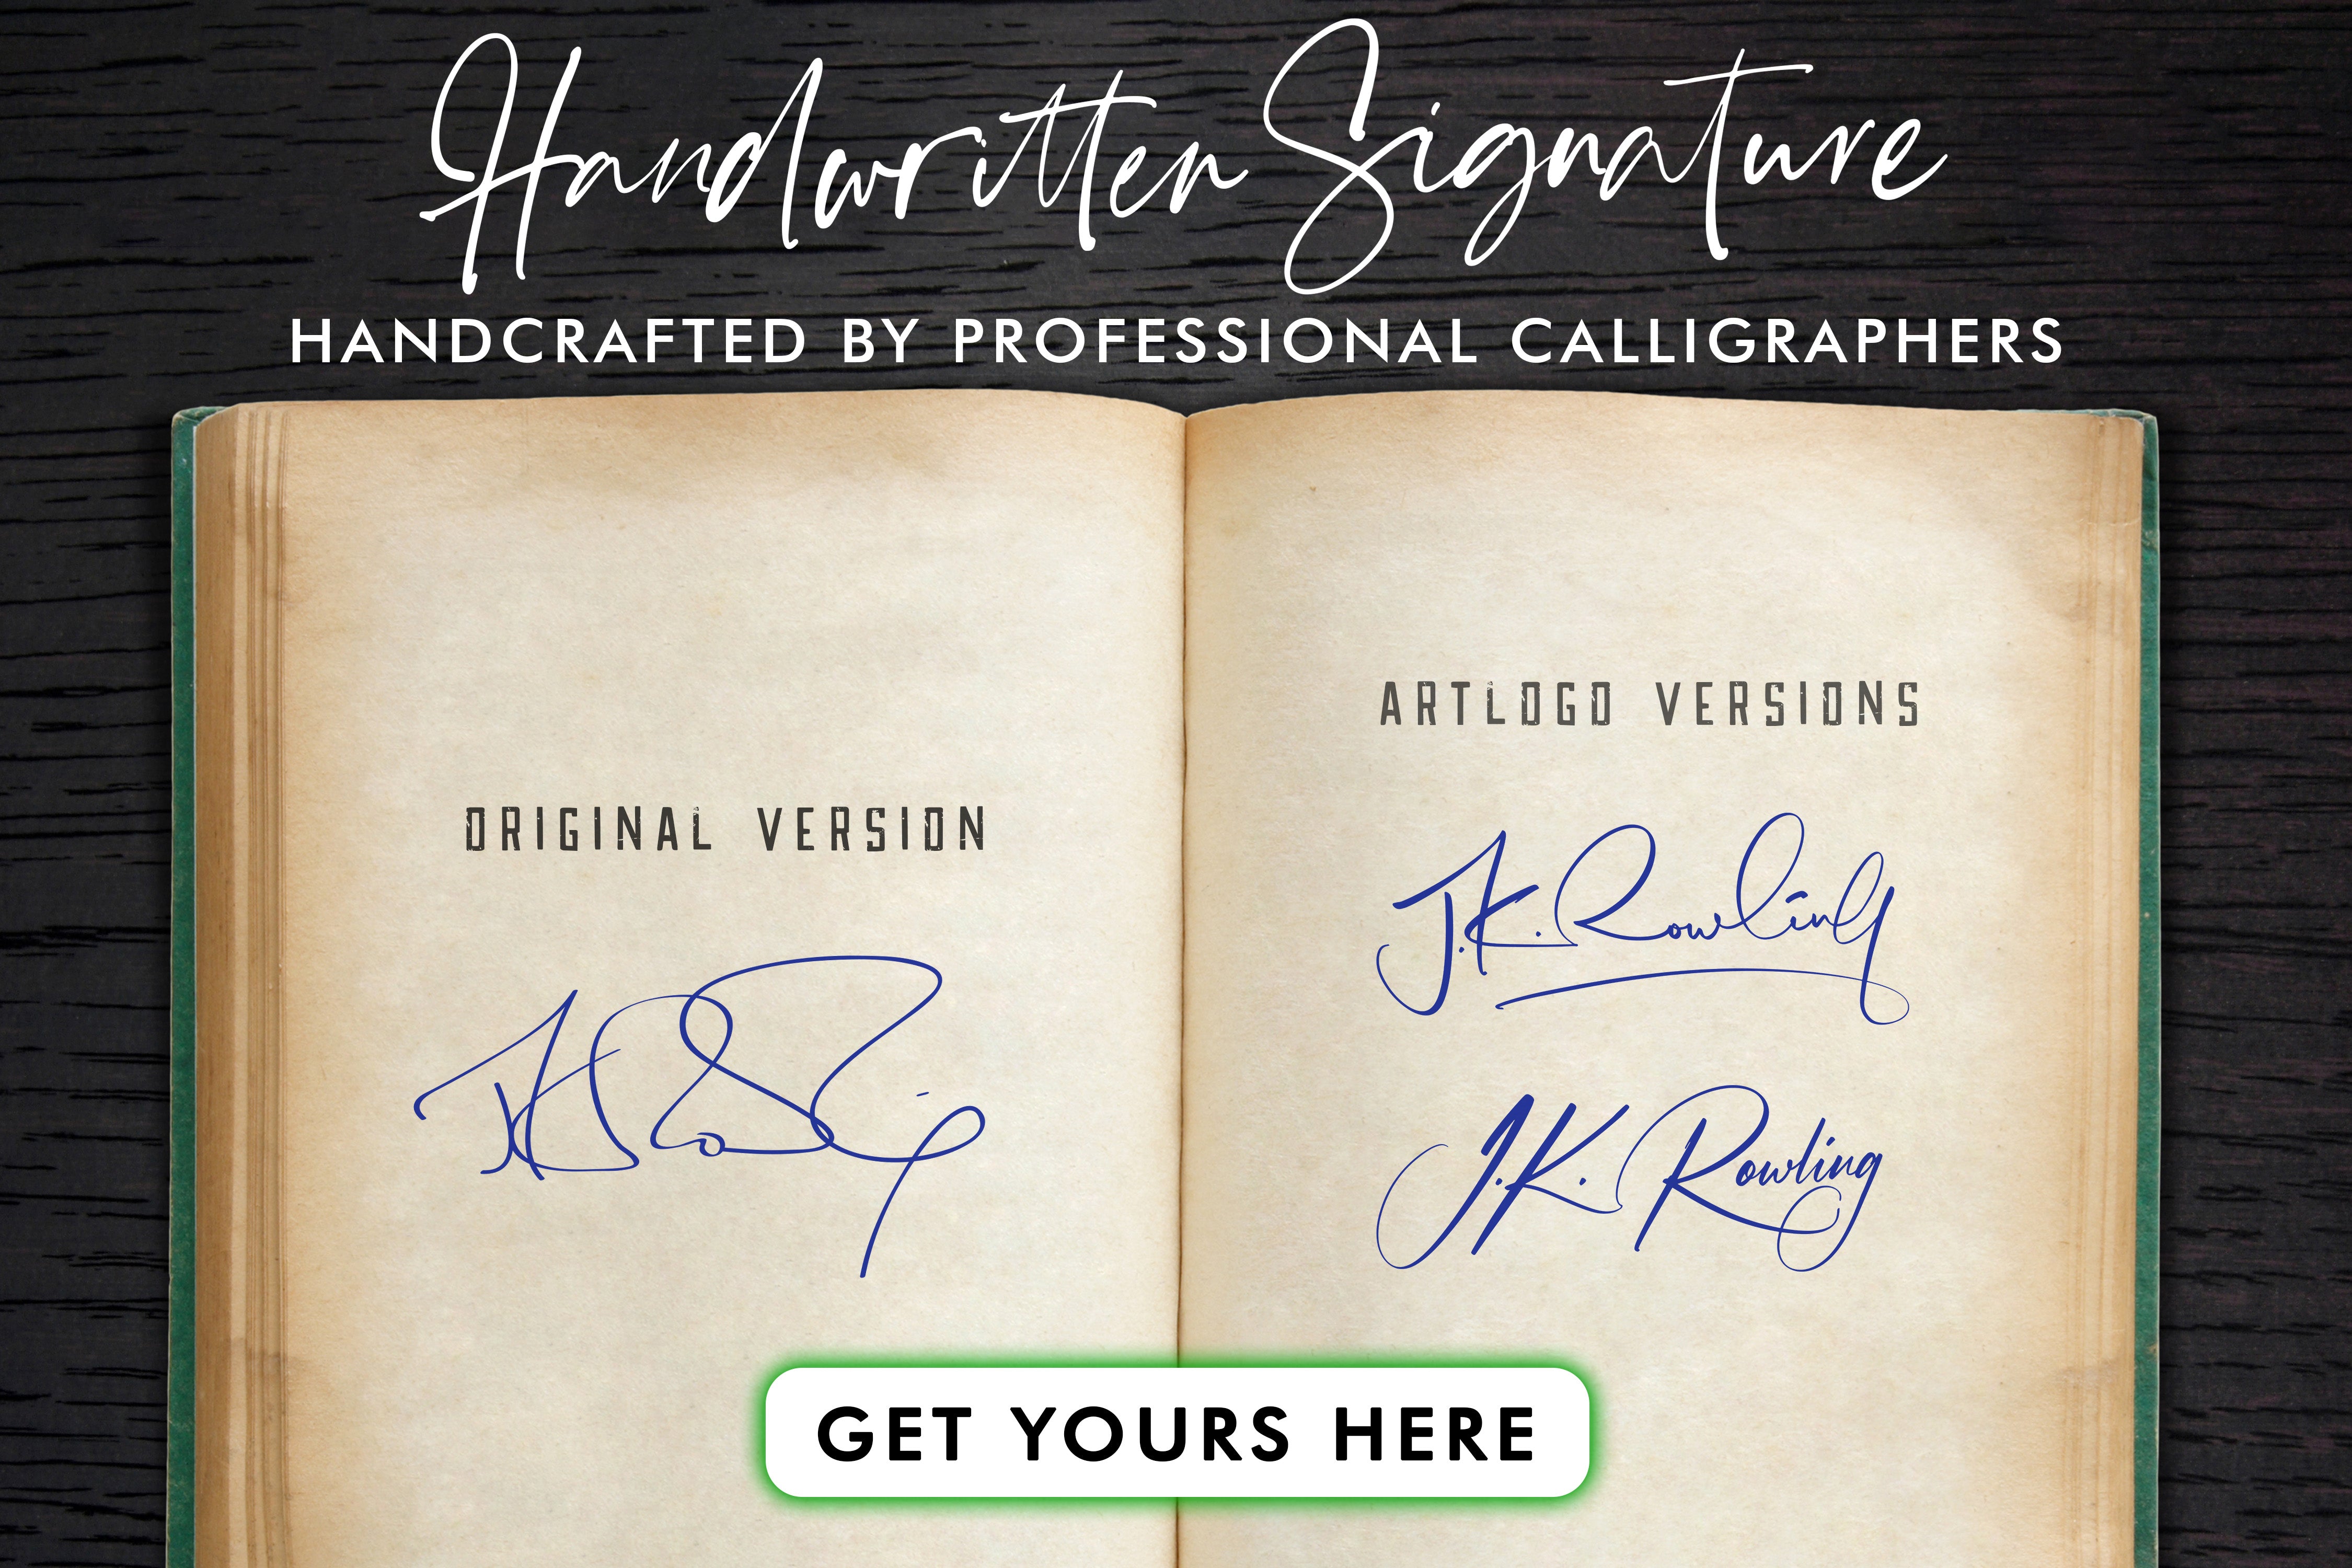 Entdecken Sie die faszinierende Welt der Unterschrift von J.K. Rowling und ihren geschätzten Wert. Entdecken Sie, wie viel das Autogramm dieser berühmten Autorin wert sein könnte.